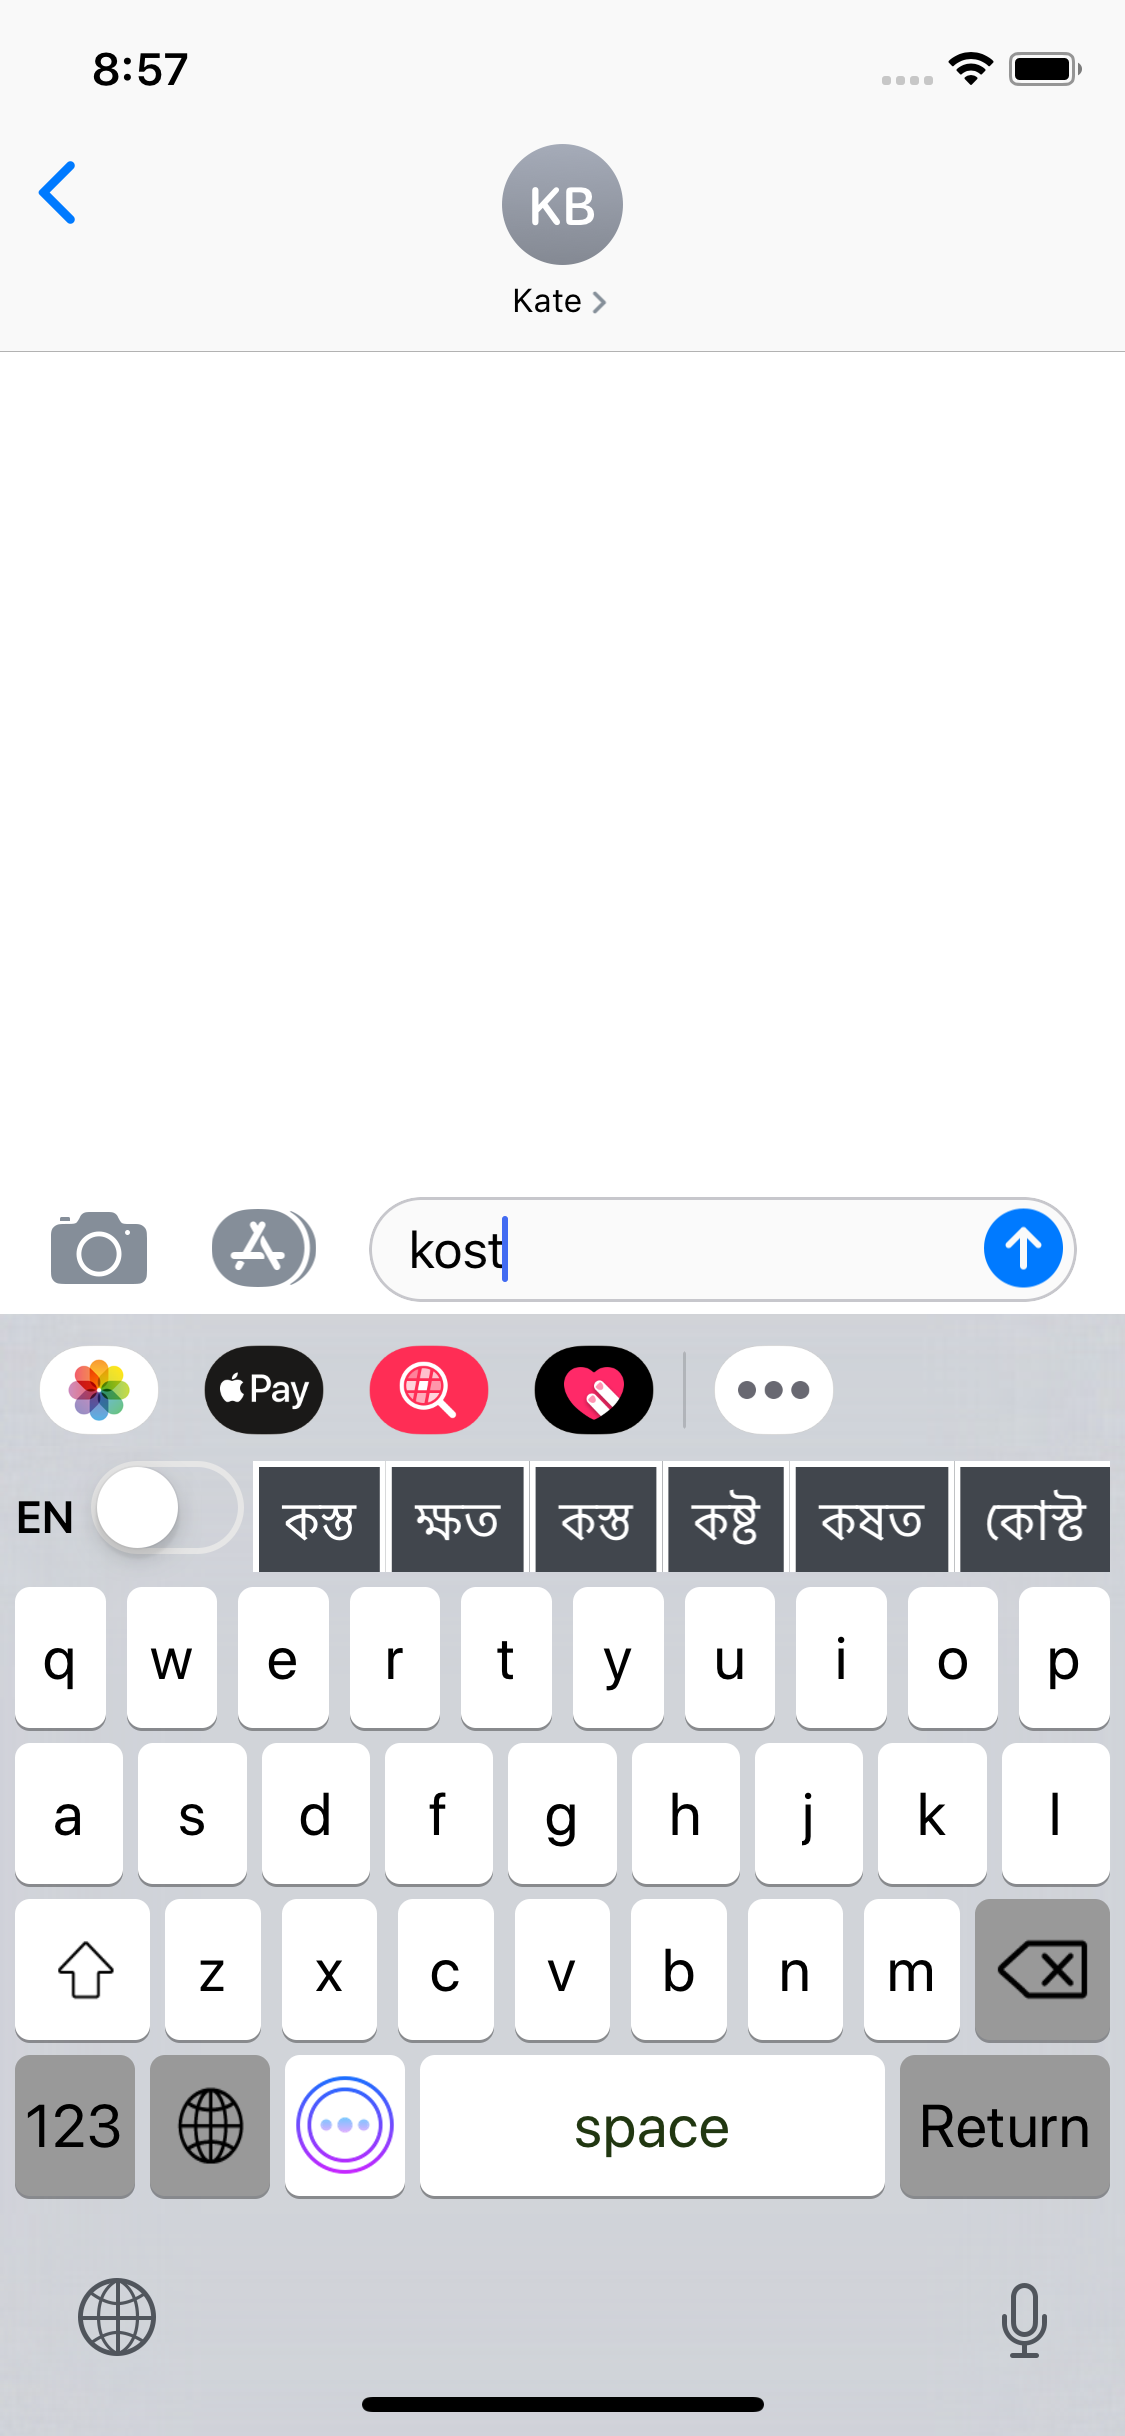 free bangla keyboard for iphone